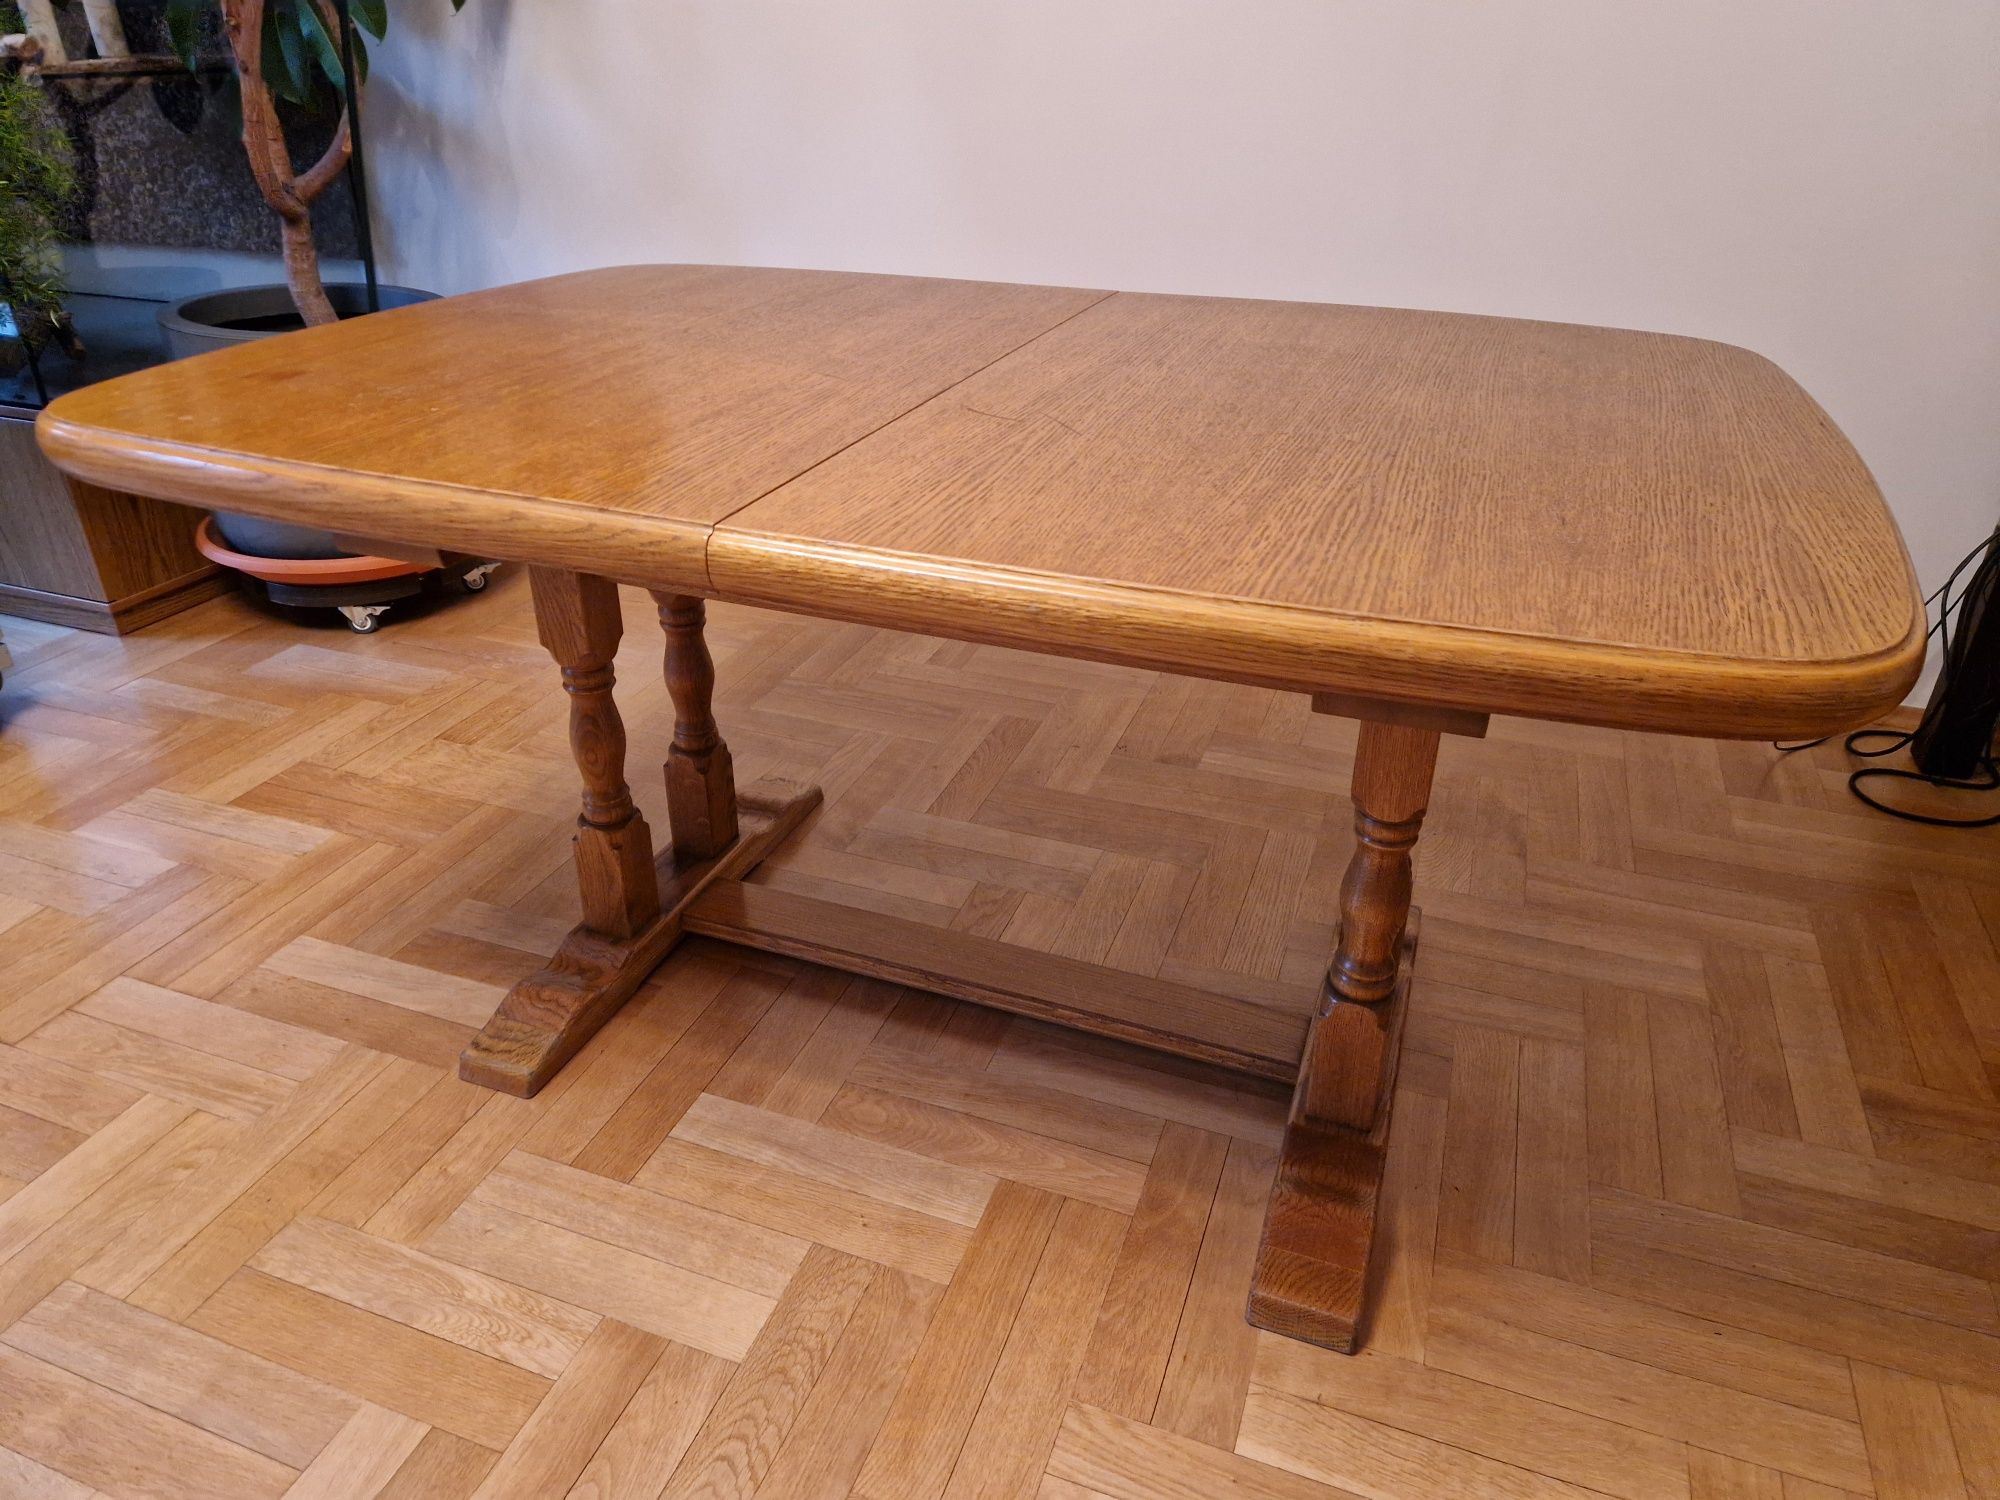 Dębowy stół, duży, 1,5-3 m